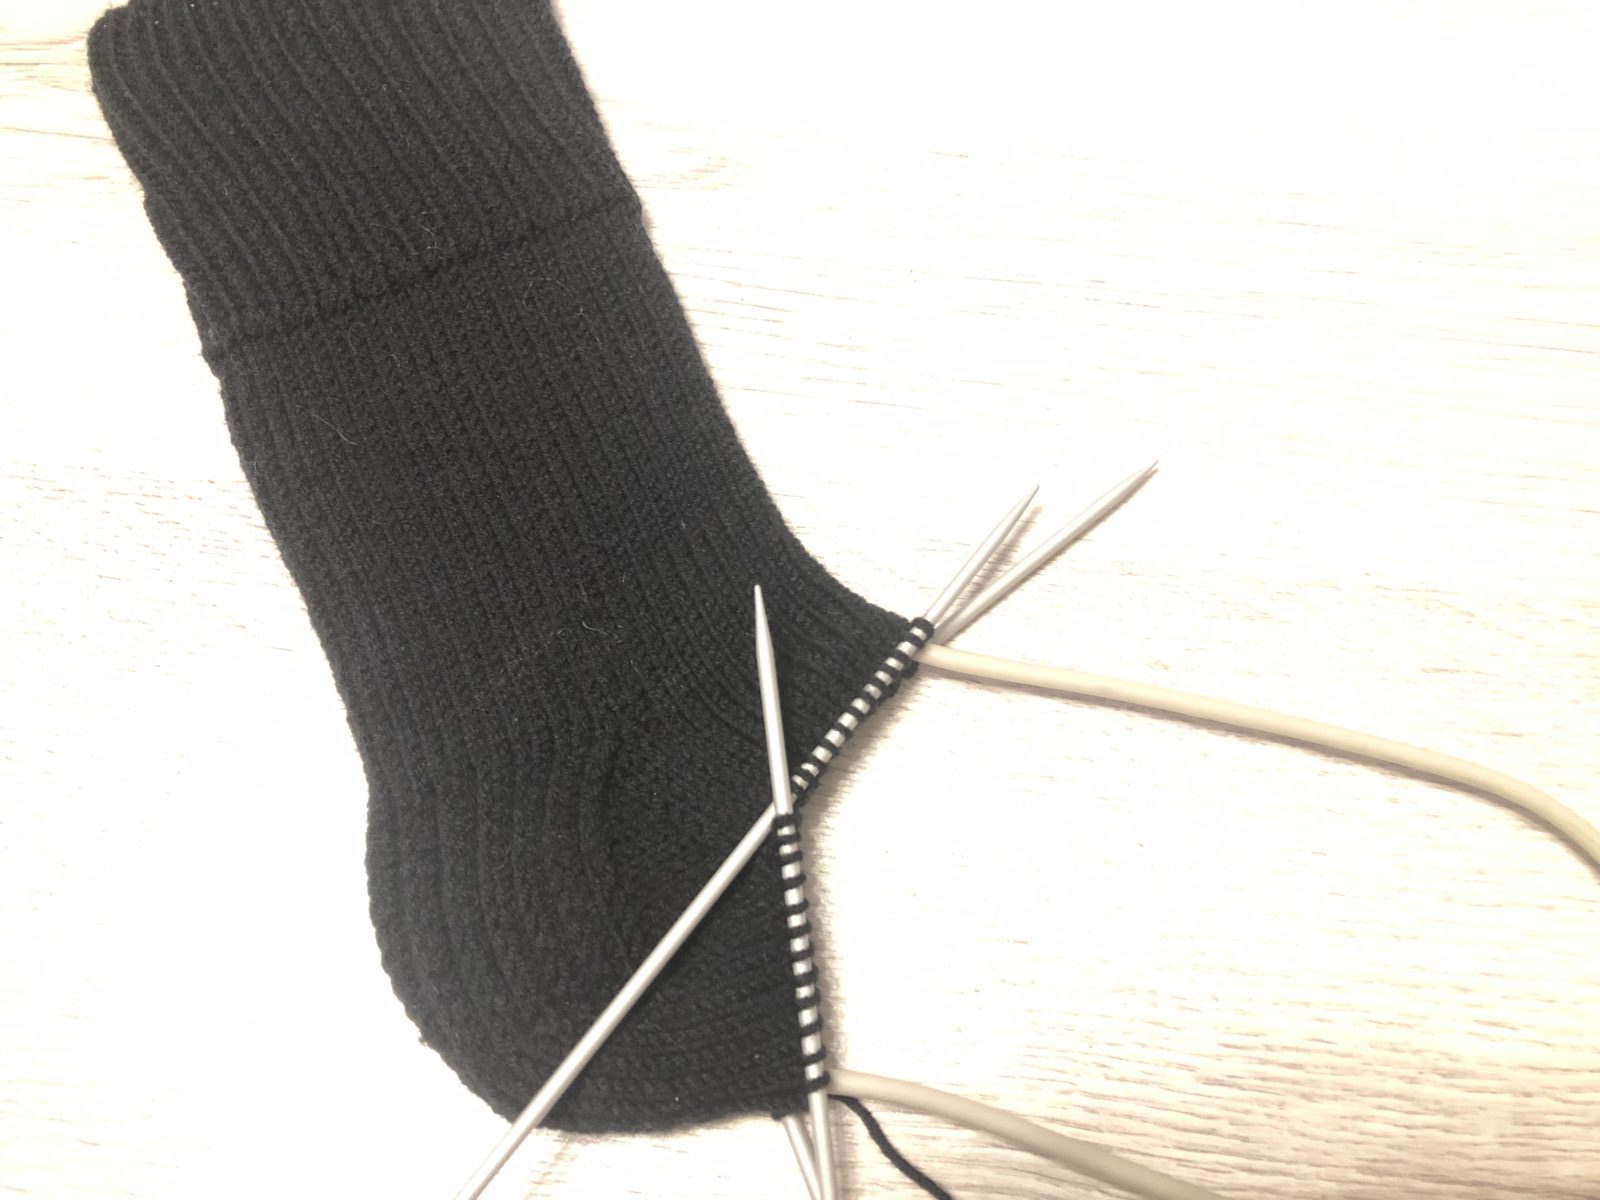 Как связать носки спицами детям и взрослым? схемы вязаных носков в технике энтерлак